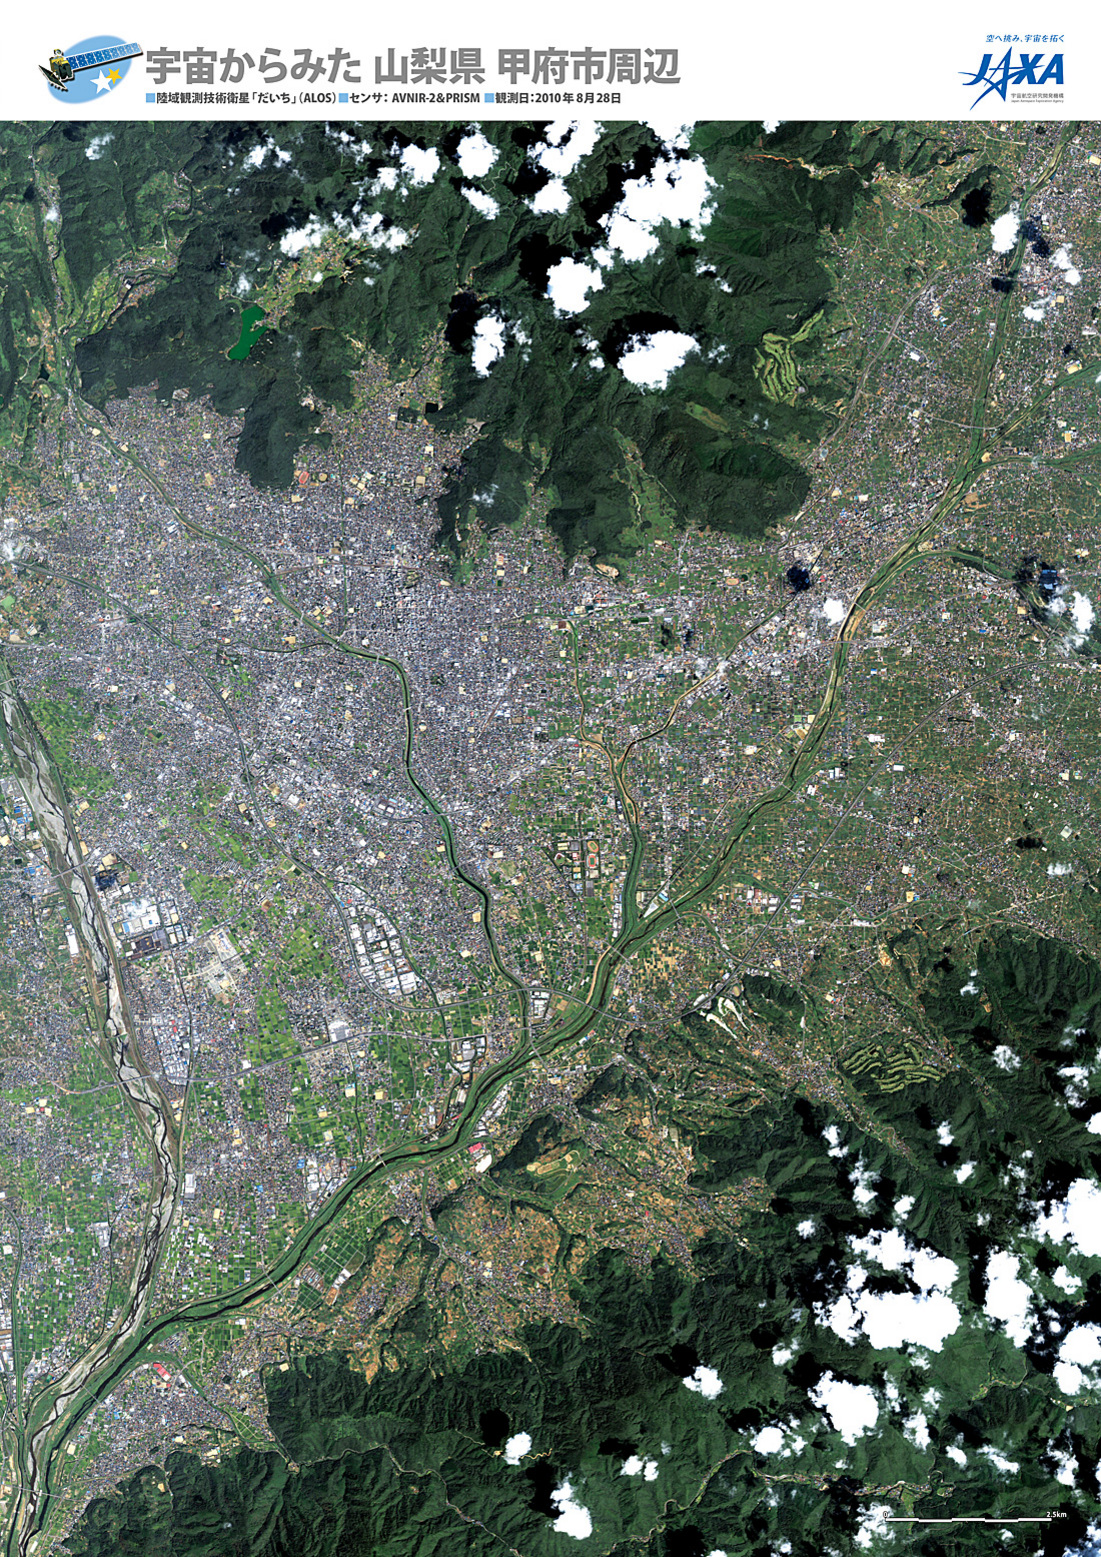 だいちから見た日本の都市 山梨県甲府市周辺:衛星画像（ポスター仕上げ）